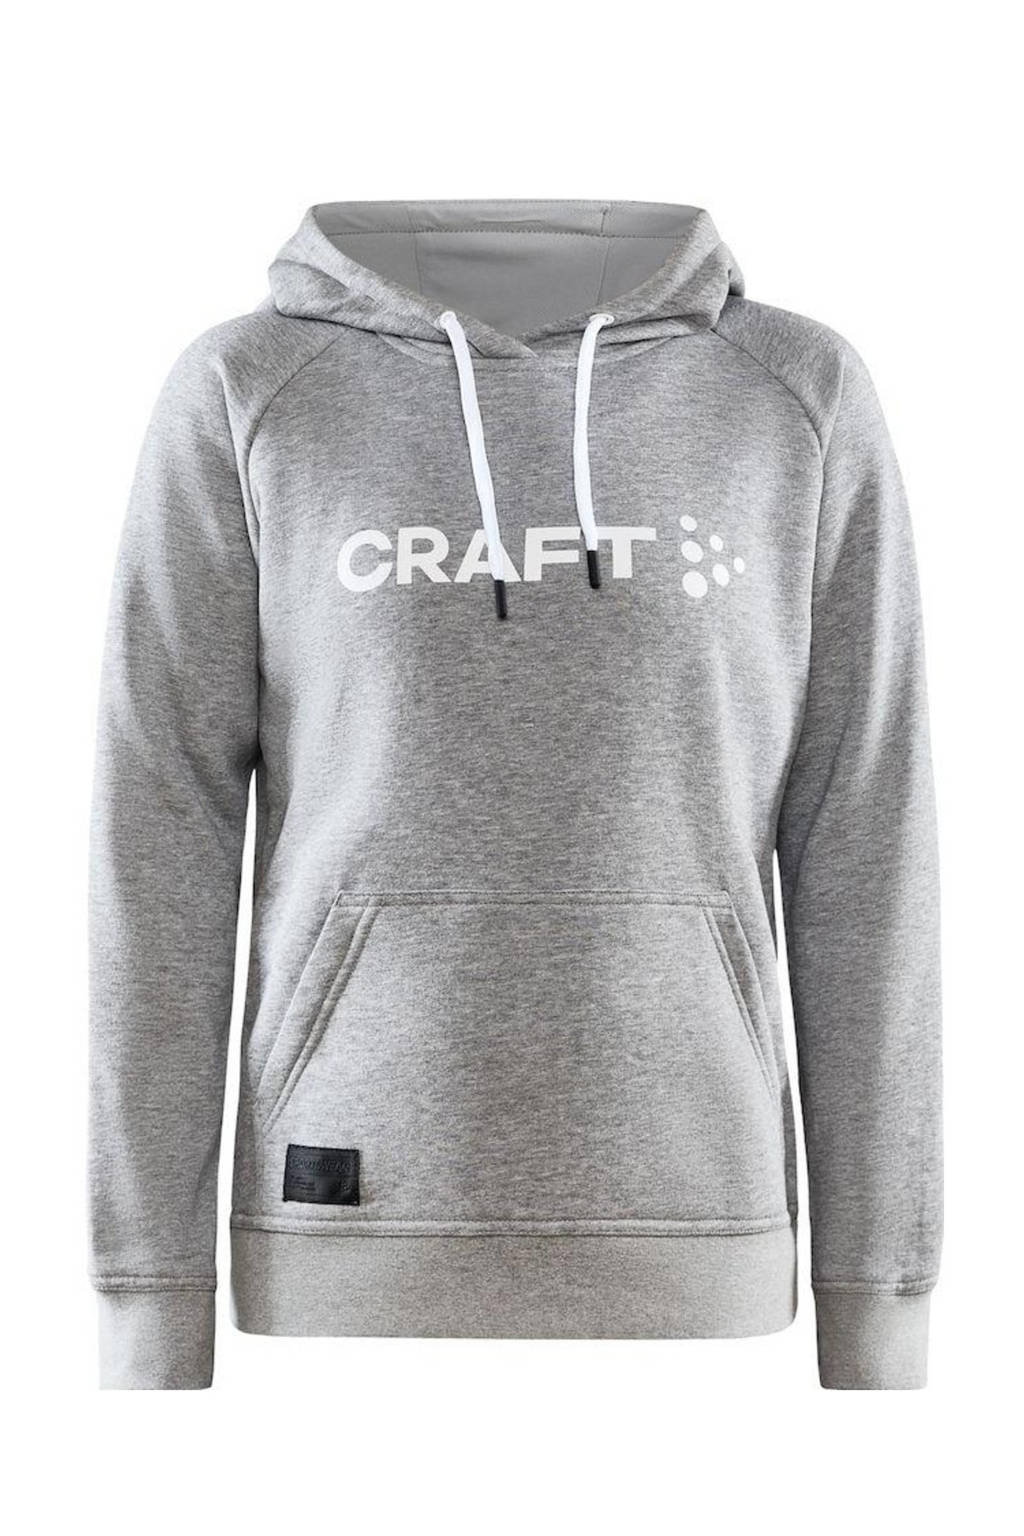 Craft hoodie Core met logo grijs melange, Grijs melange